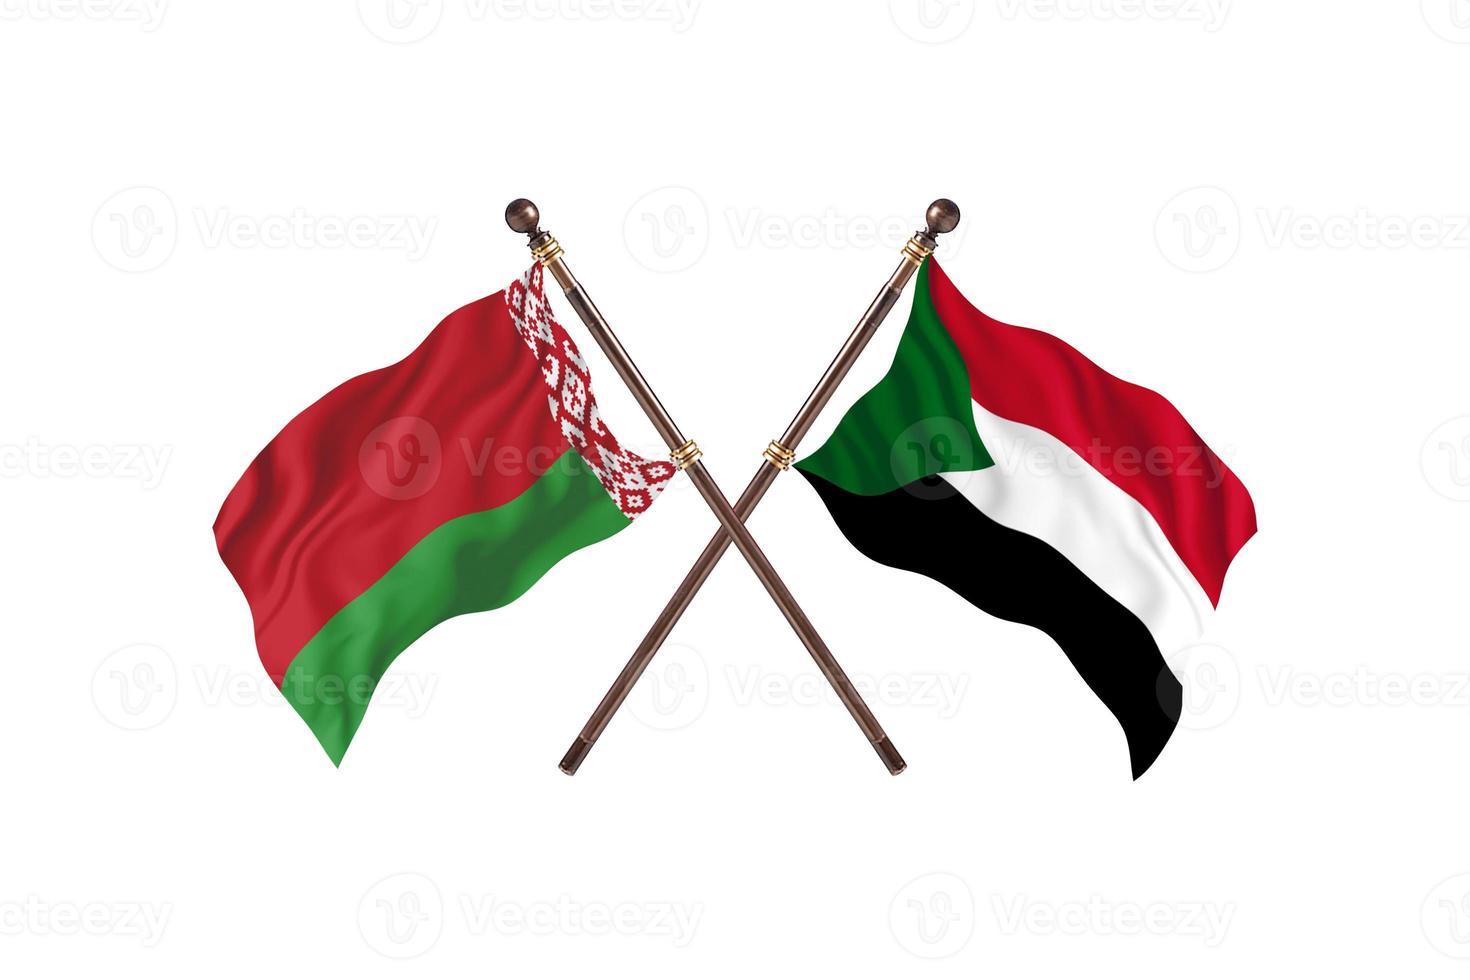 Vitryssland mot sudan två Land flaggor foto